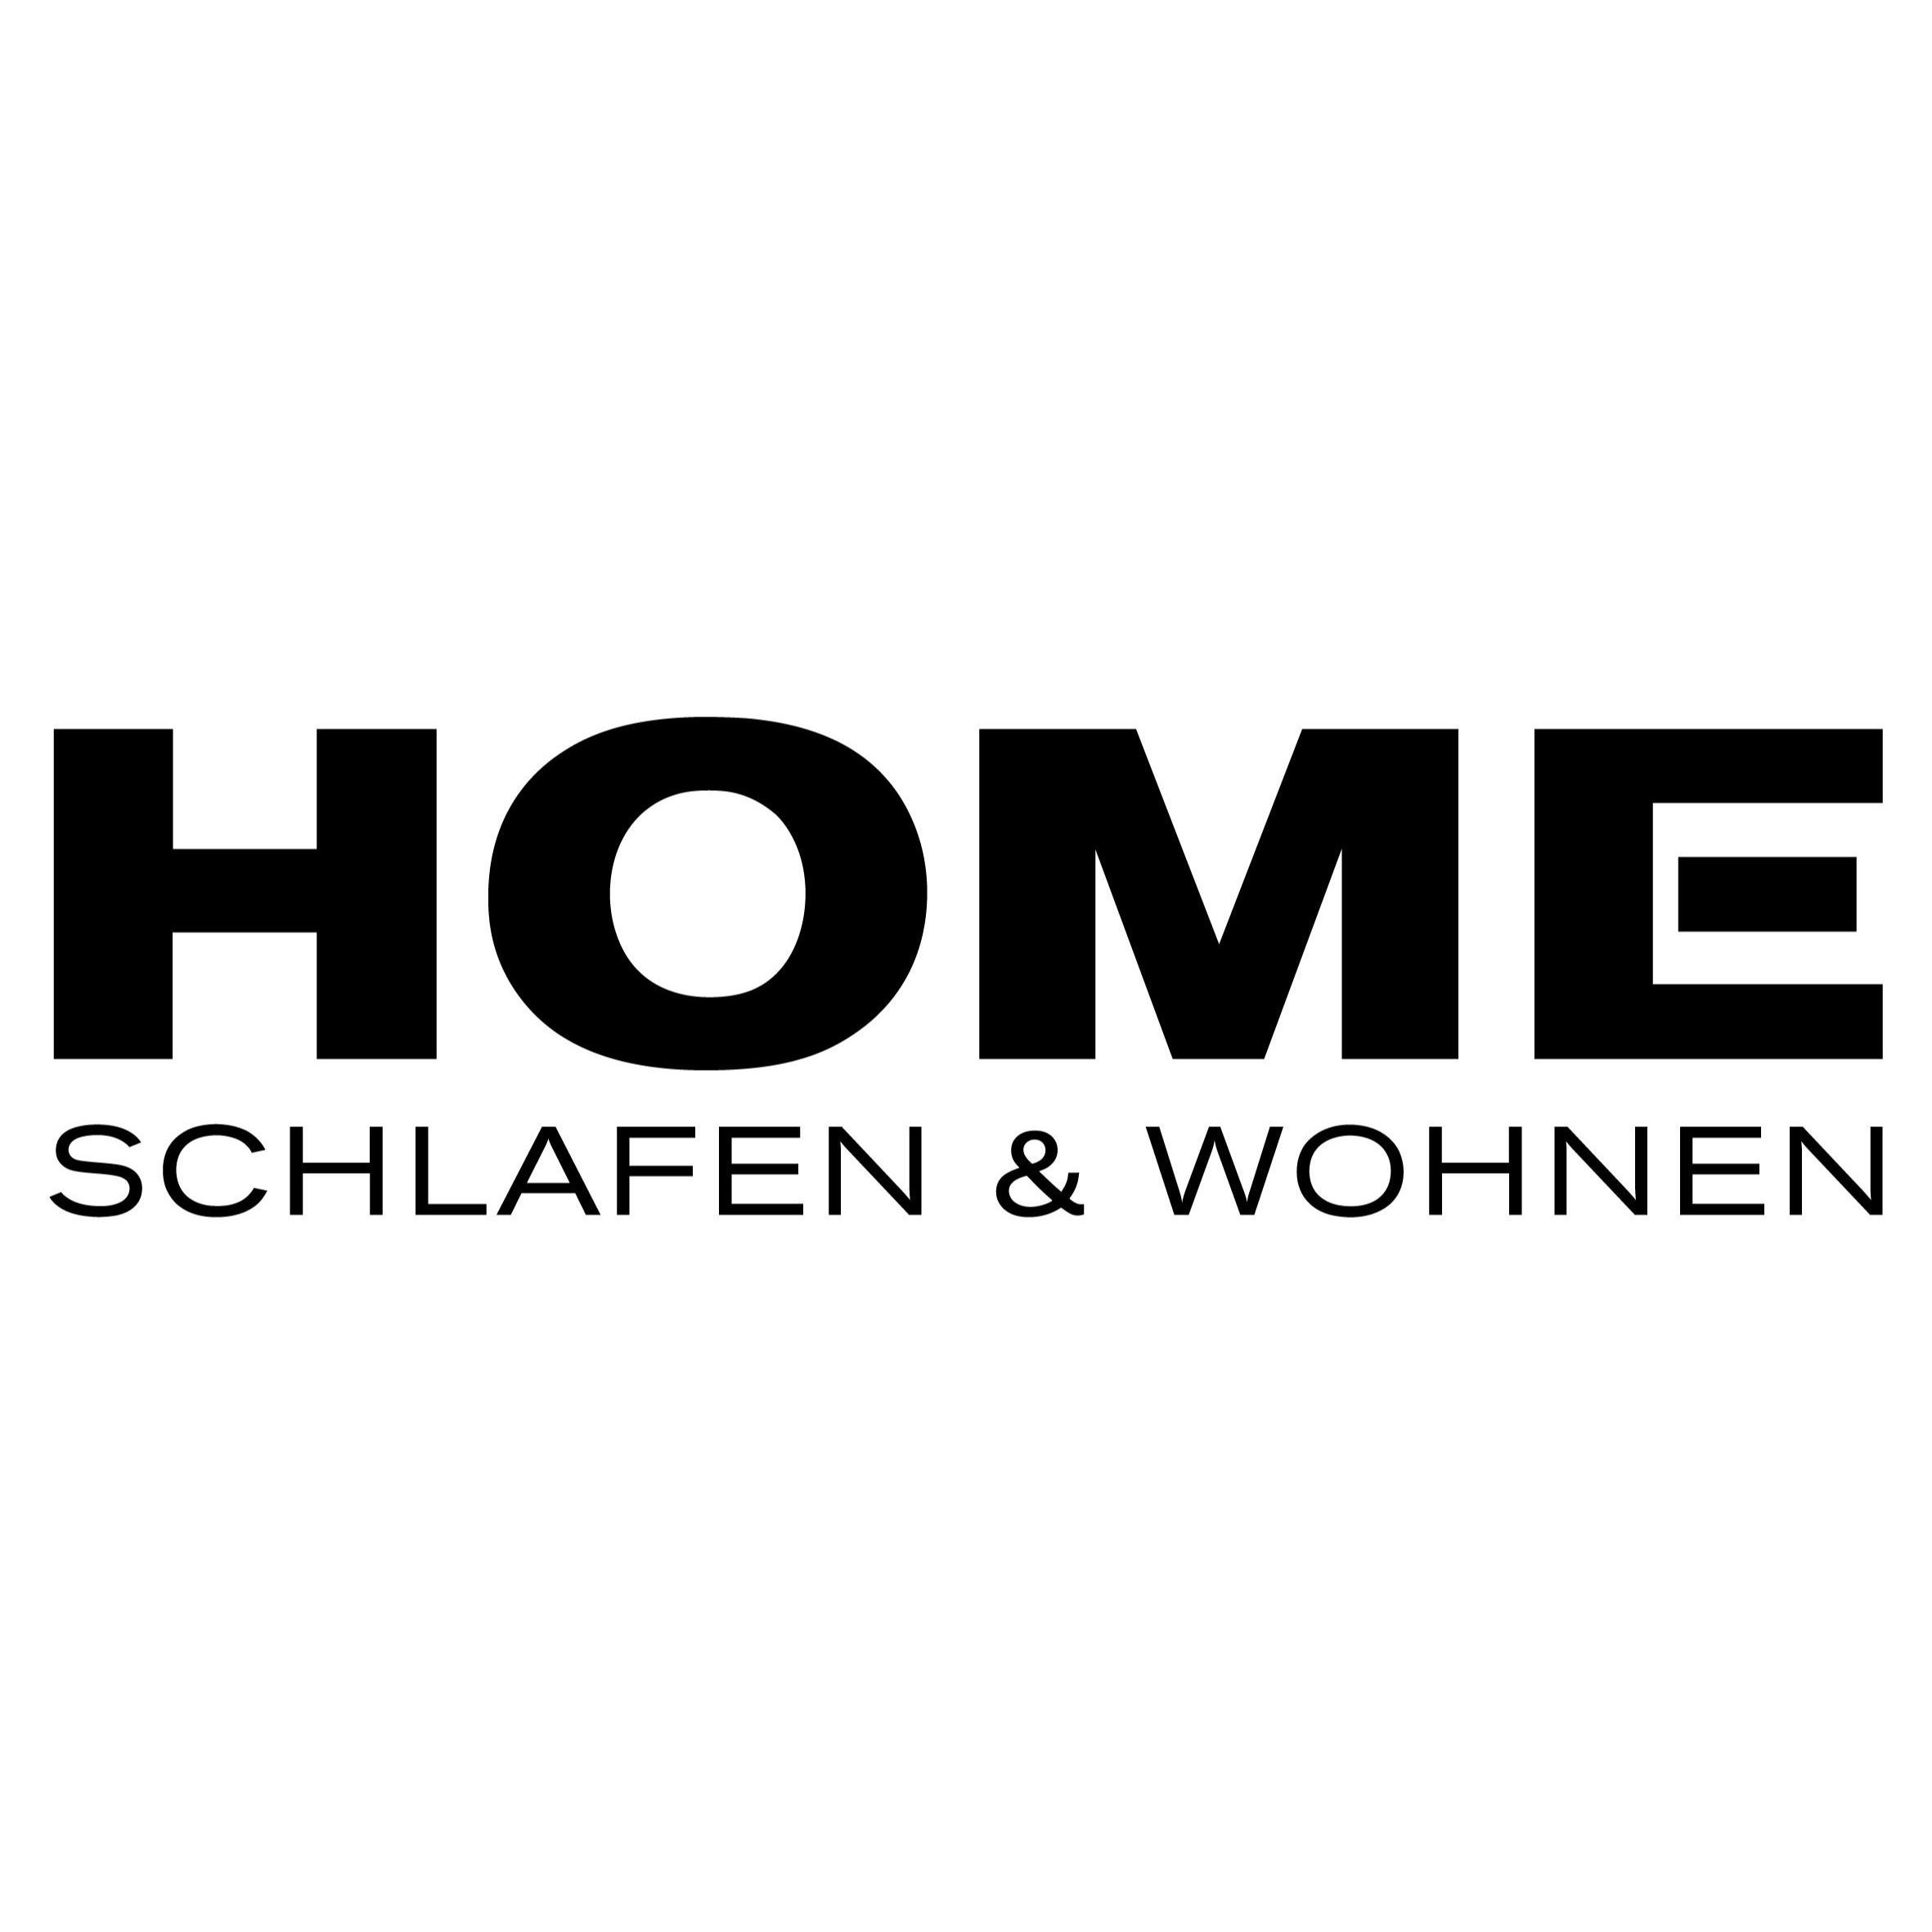 HOME Schlafen & Wohnen Köln Logo